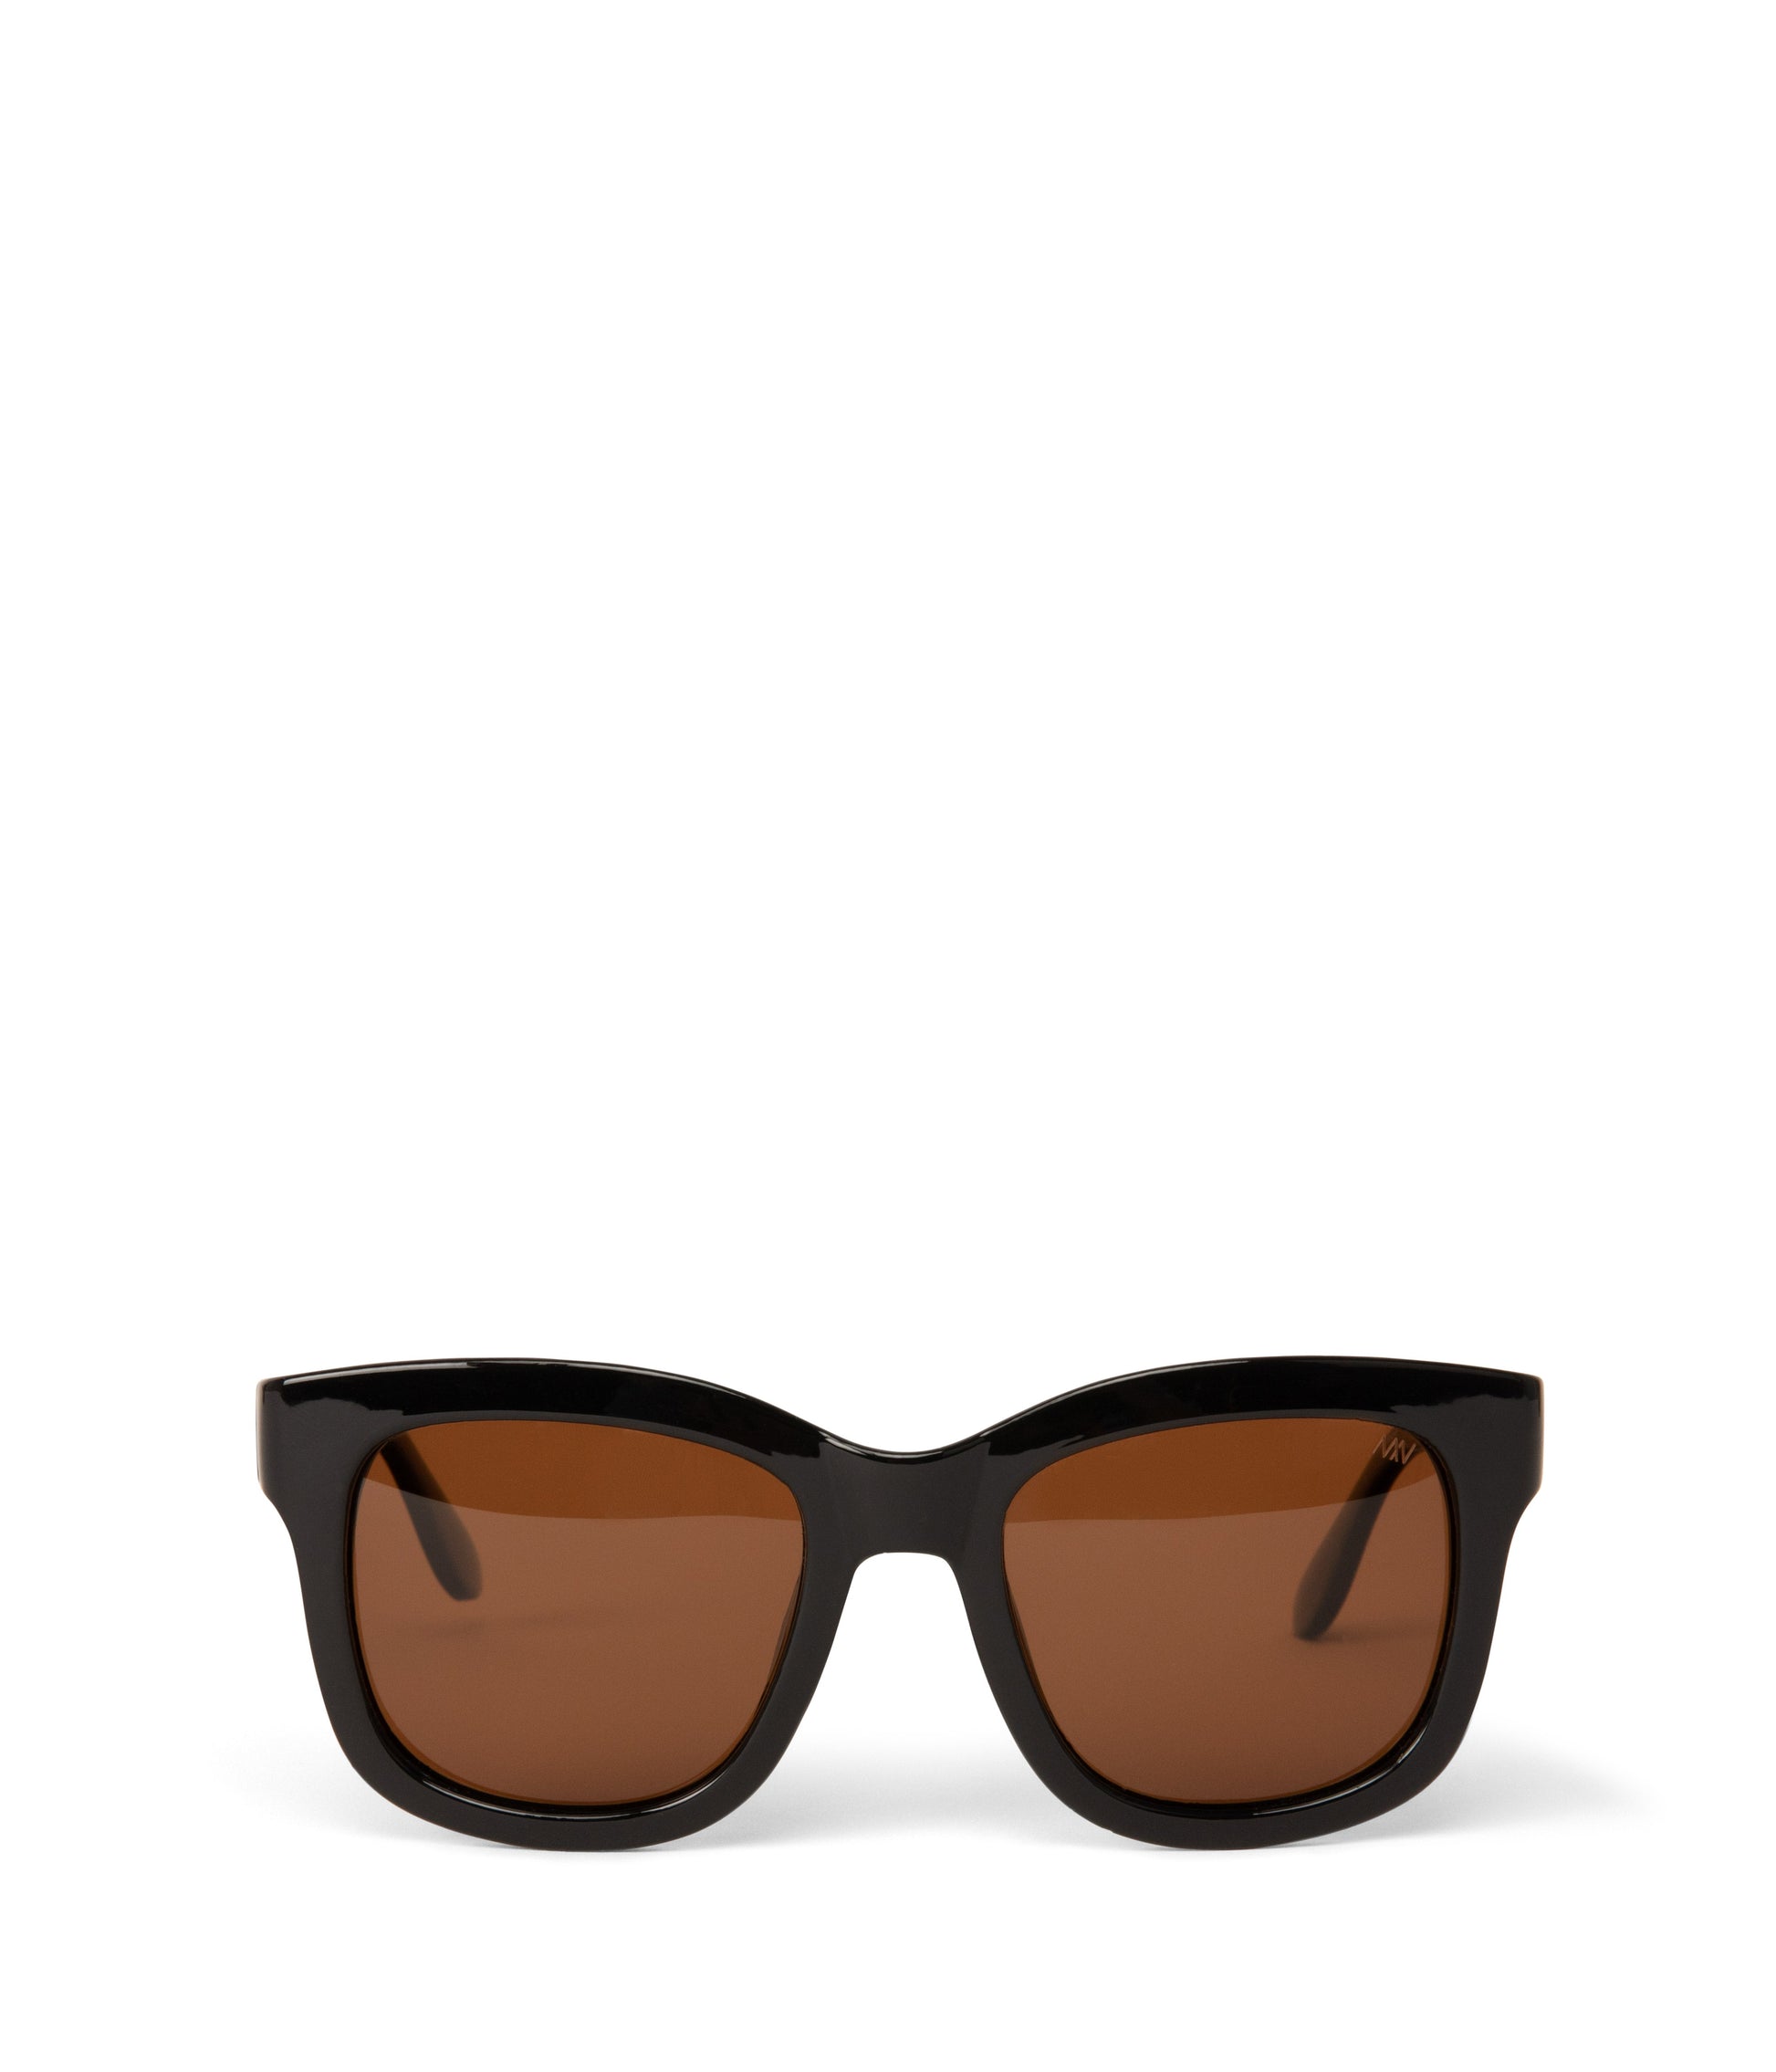 CHARLET-2 Recycled Wayfarer Sunglasses | Color: Black, Brown - variant::black